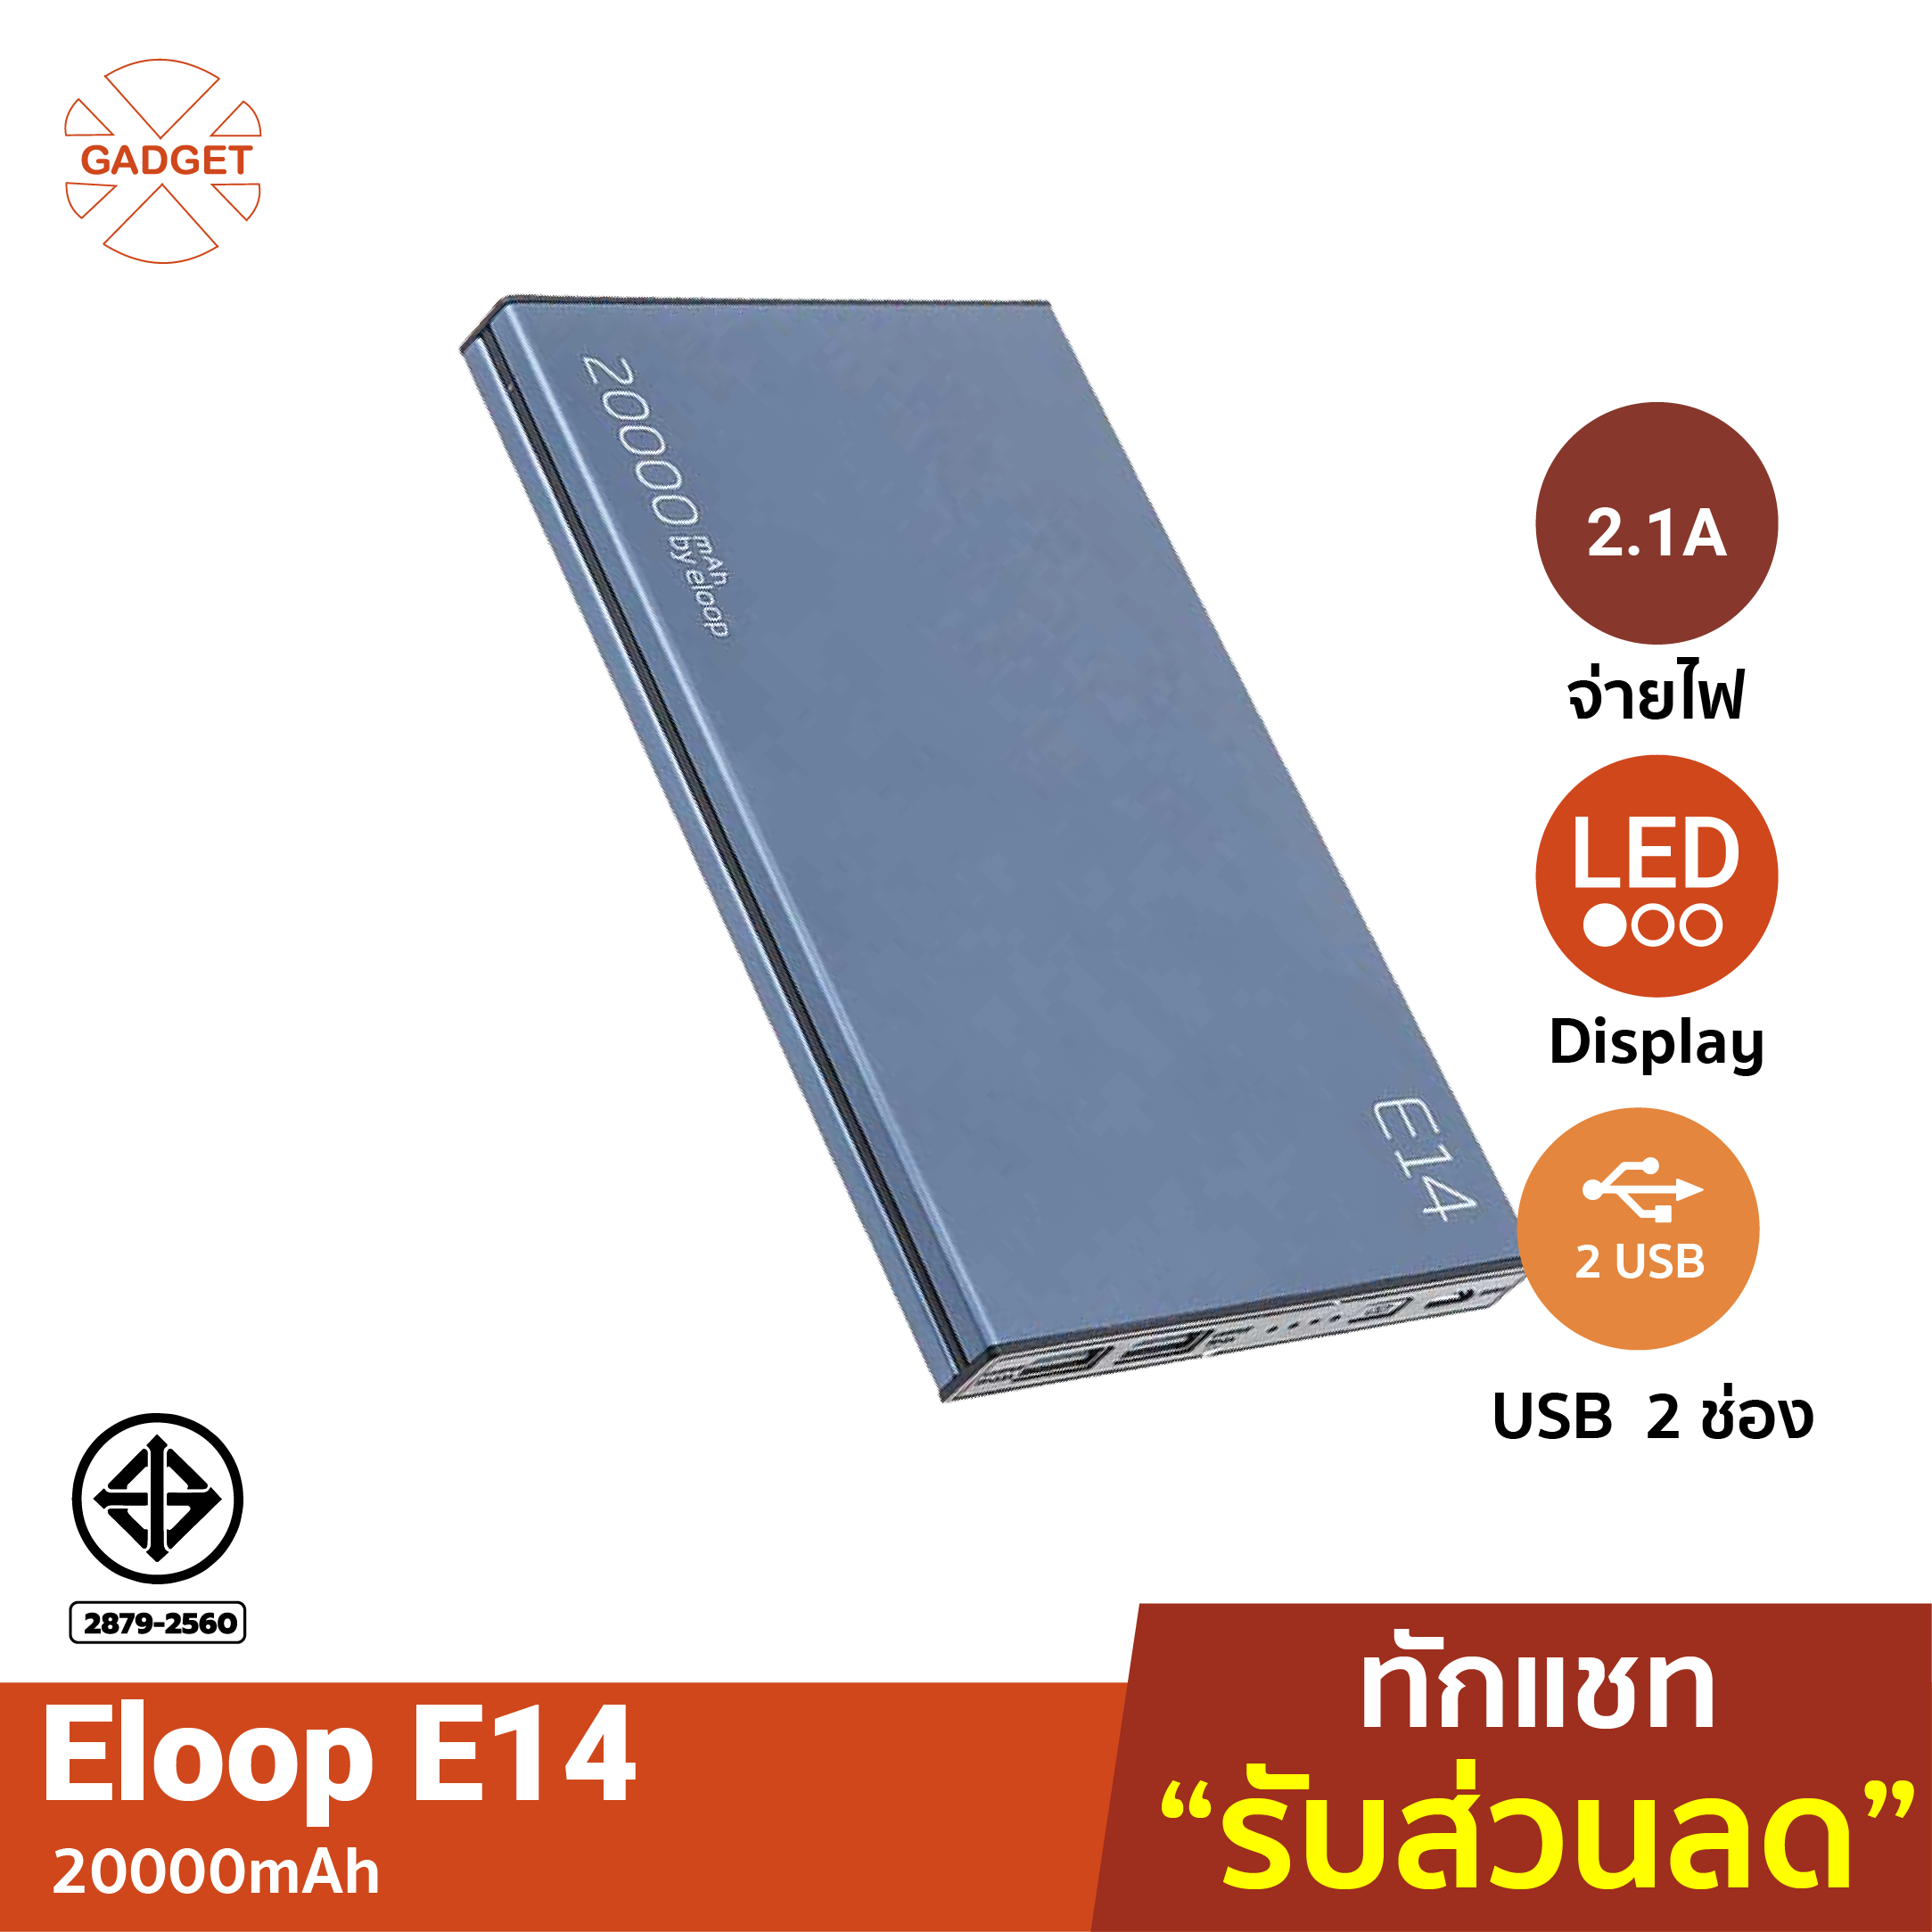 [ส่งฟรี] Eloop E14 แบตสำรอง 20000mAh Power Bank ของแท้100% ฟรีซองผ้ากำมะหยี่ สายชาร์จ Micro USB แบตเตอรี่สำรอง powerbank มาตรฐาน มอก.